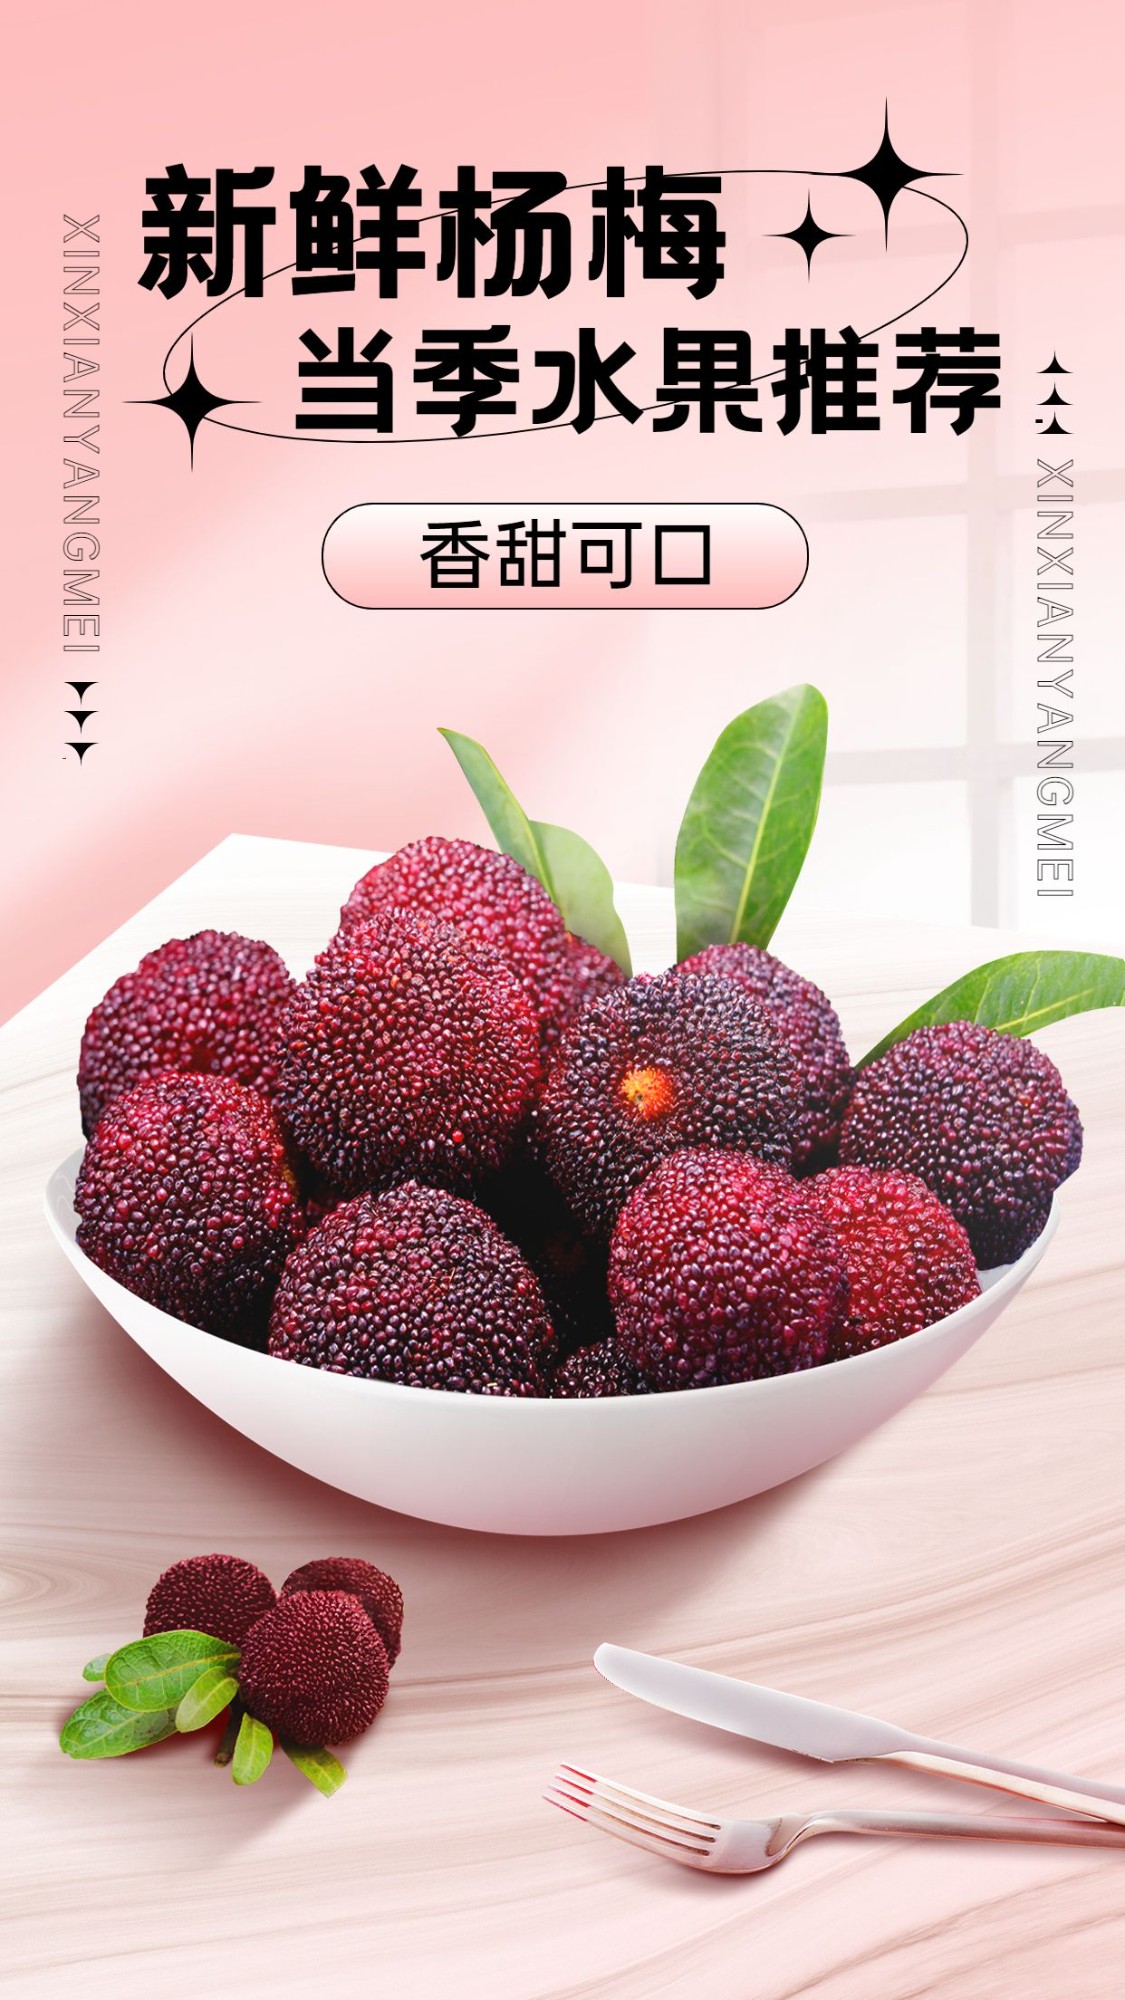 食品生鲜水果杨梅产品展示竖版海报预览效果